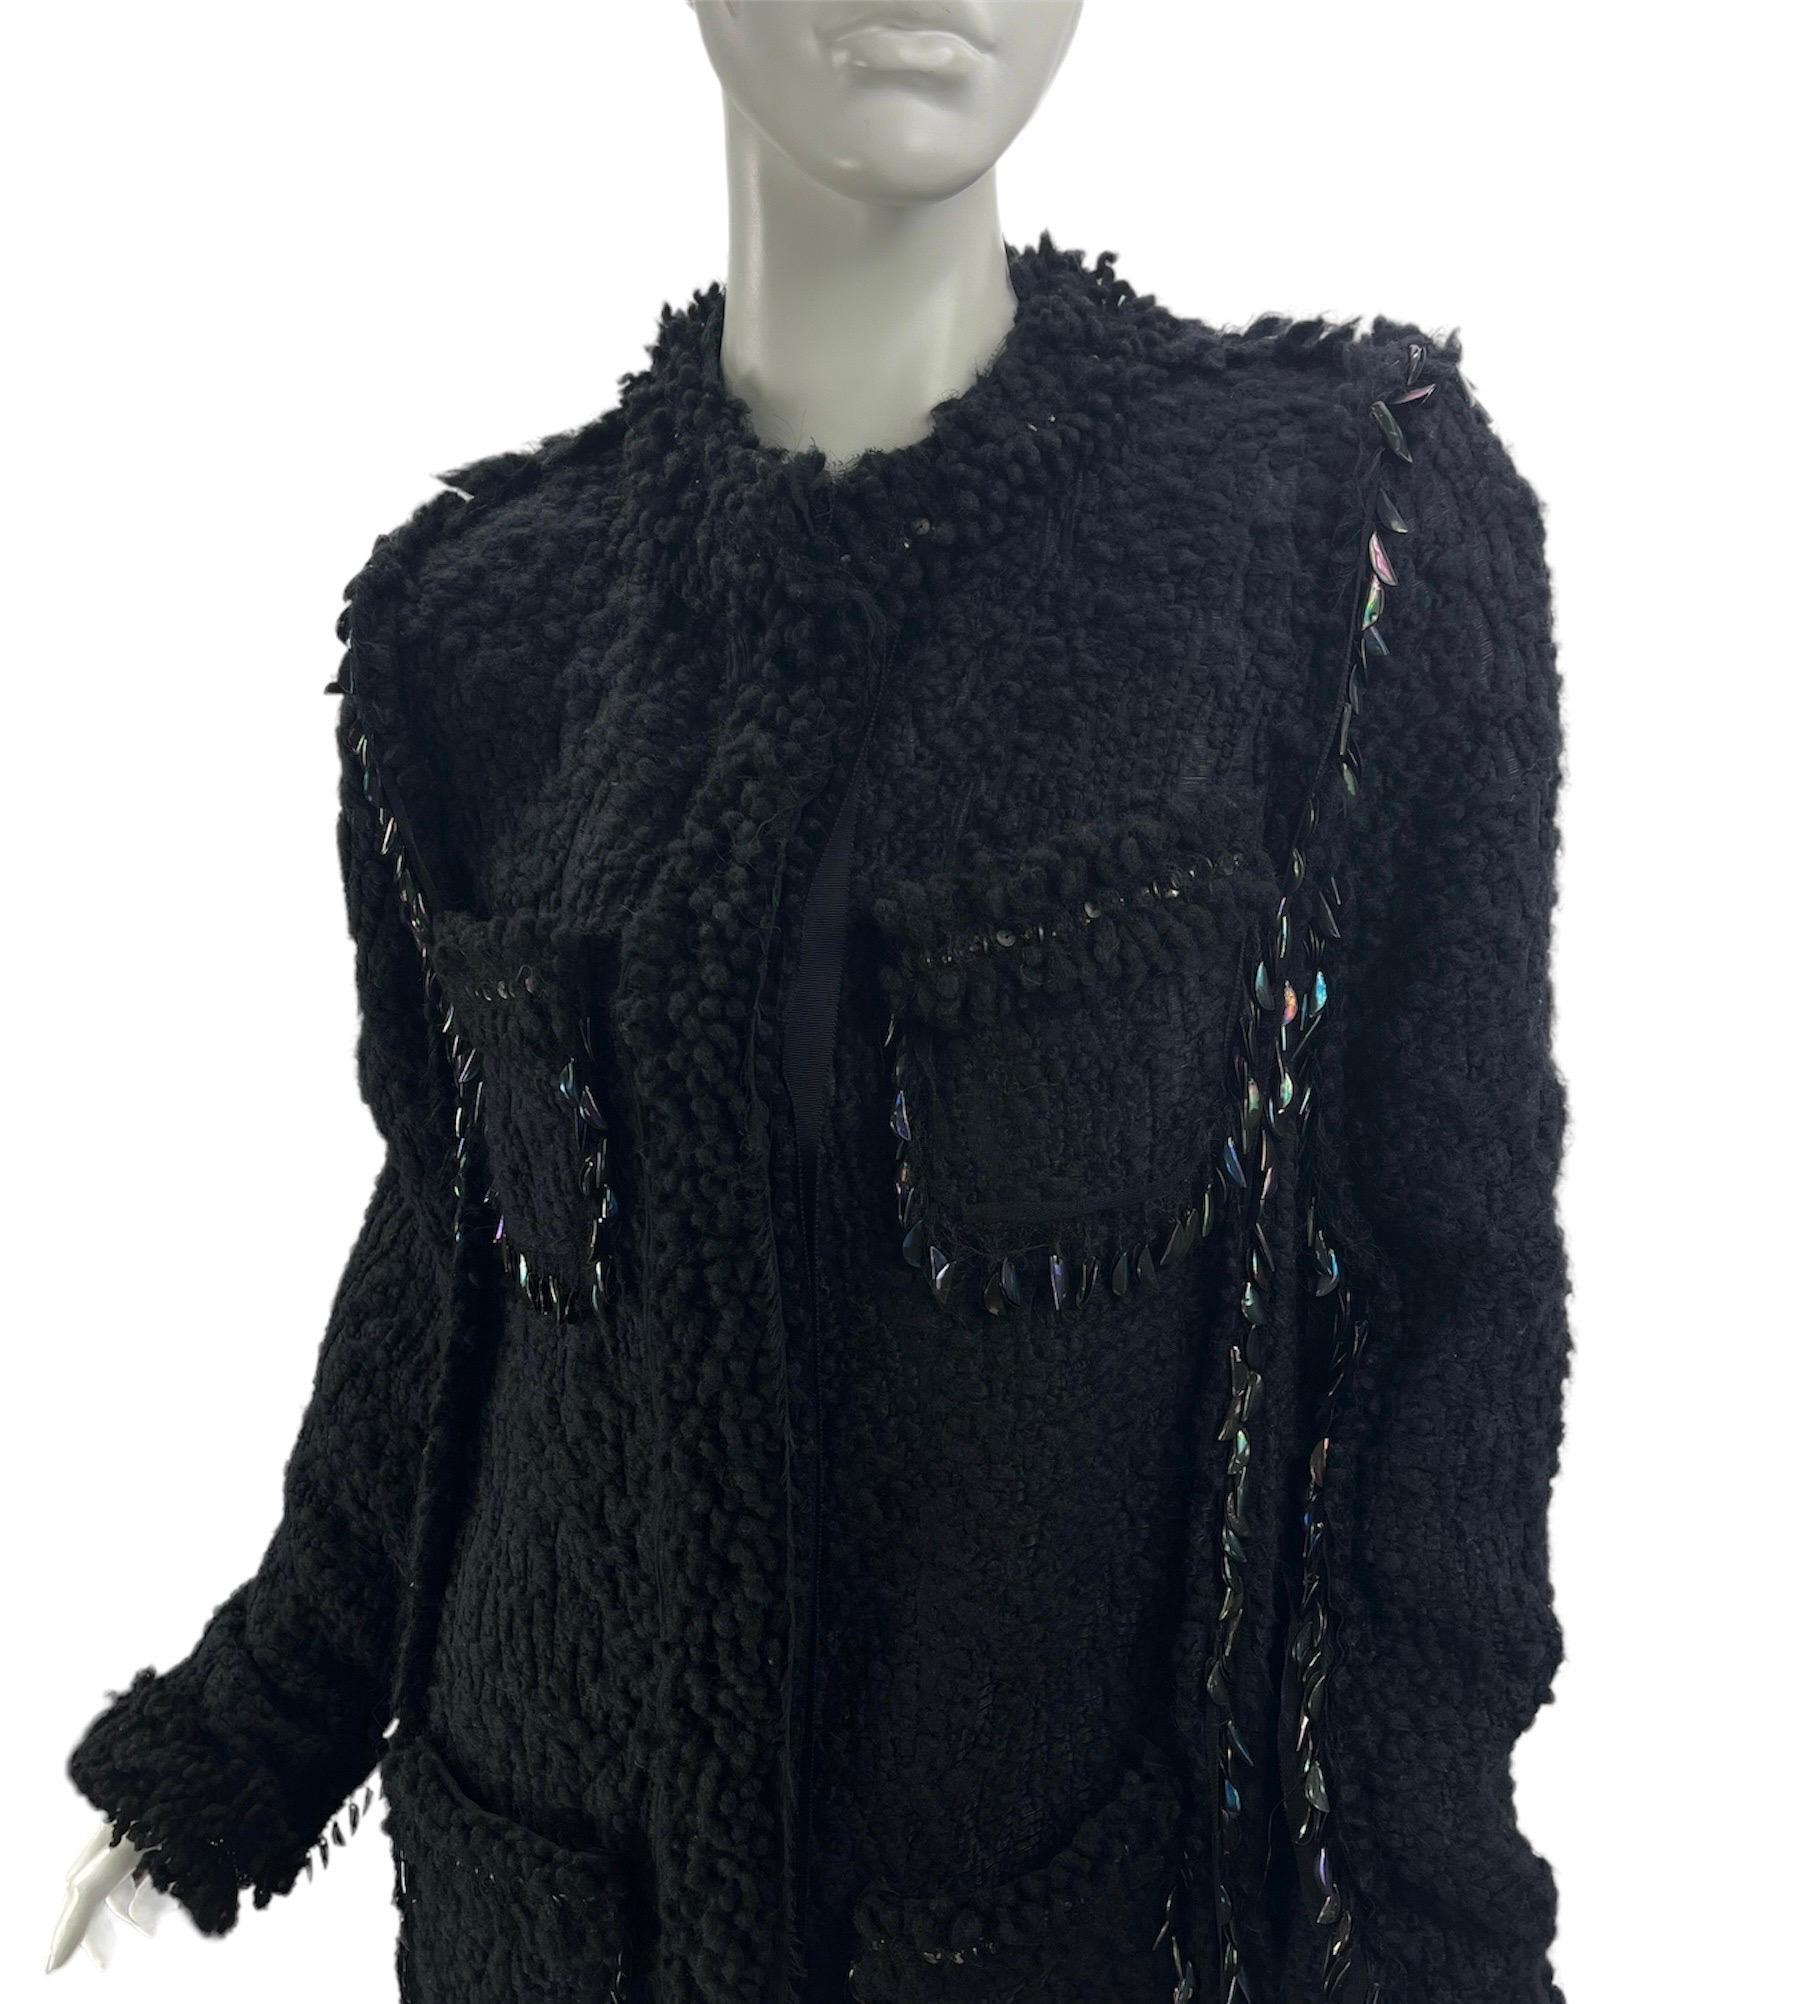 H/W 2010 Vintage Lanvin Schwarzer verzierter Boucle-Tweedmantel aus Tweed 40 - 8 Neu mit Blumenmuster Damen im Angebot